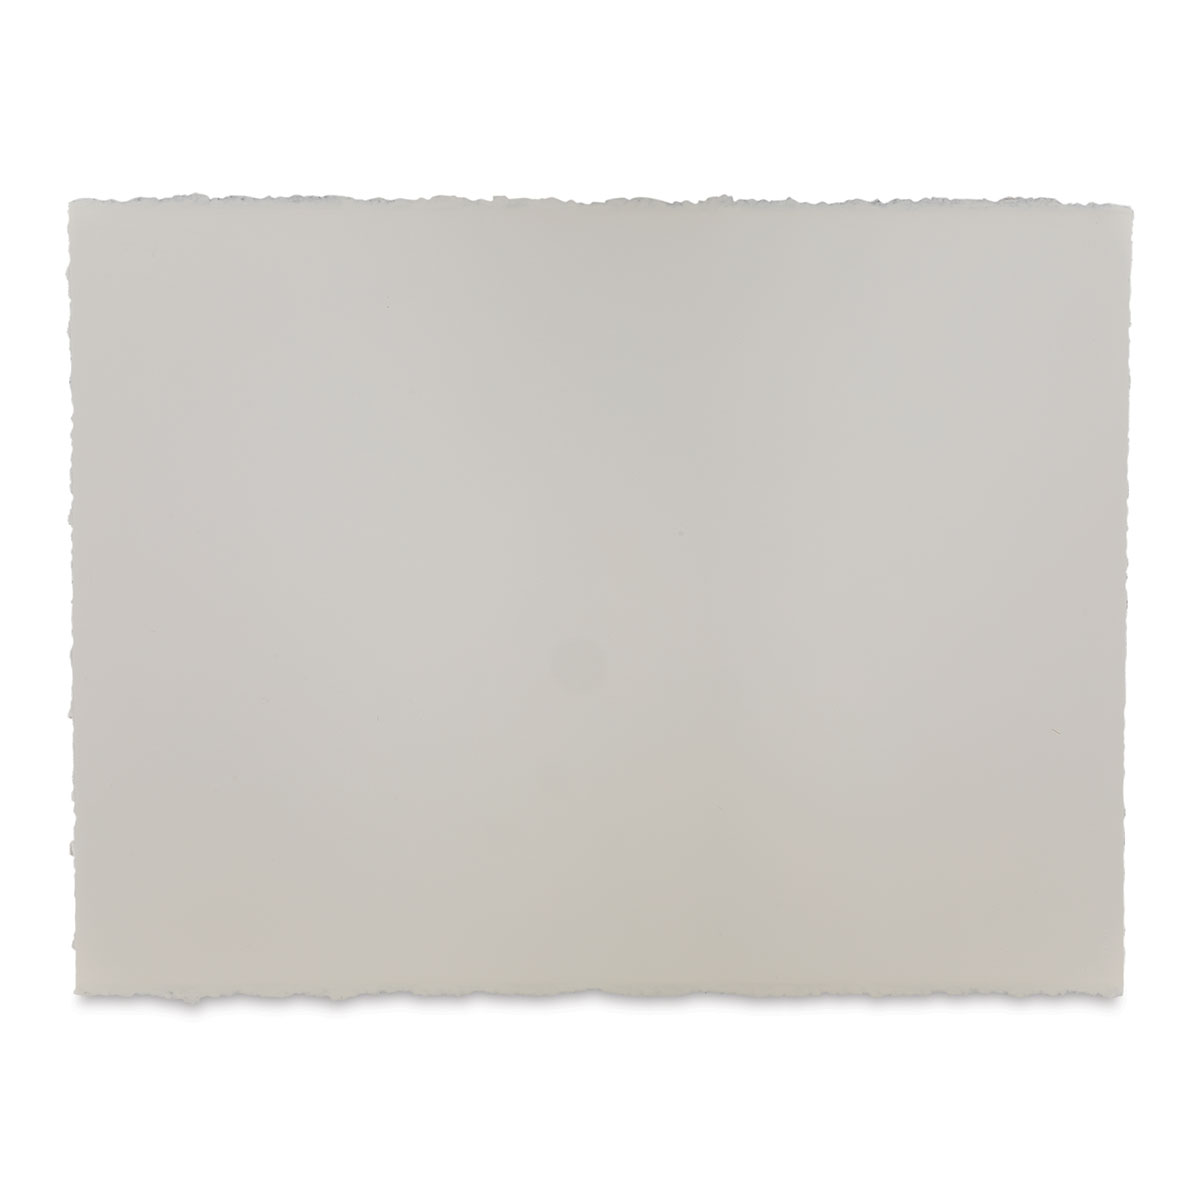 Arches Watercolor Paper Sheet Bright White 300lb Cold Press 22x30